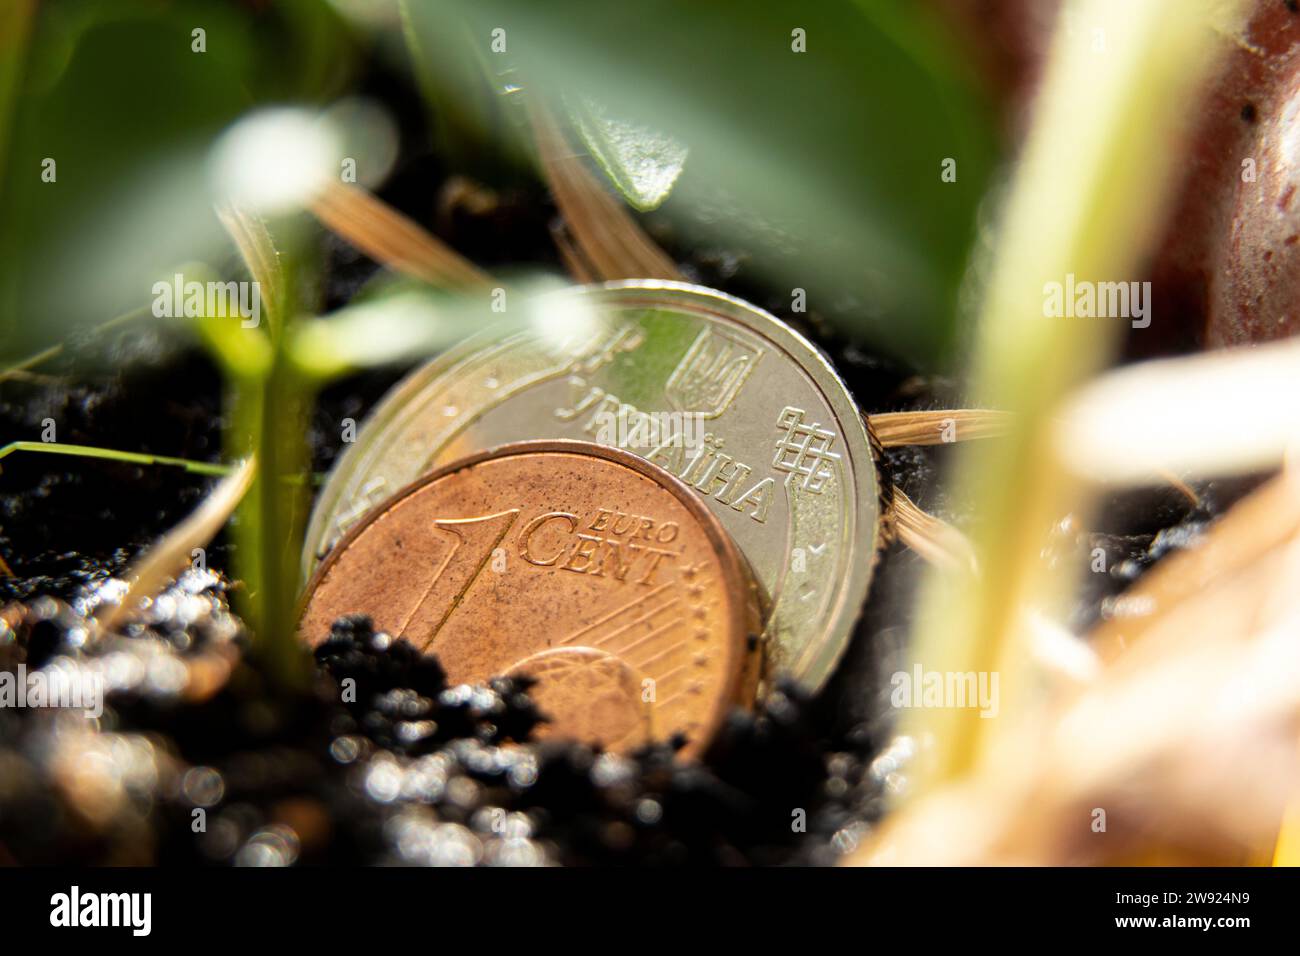 Una moneta da un centesimo e due hryvnia ucraine si trovano nel terreno accanto alla pianta verde, alla crescita e all'economia, al denaro e alla finanza Foto Stock